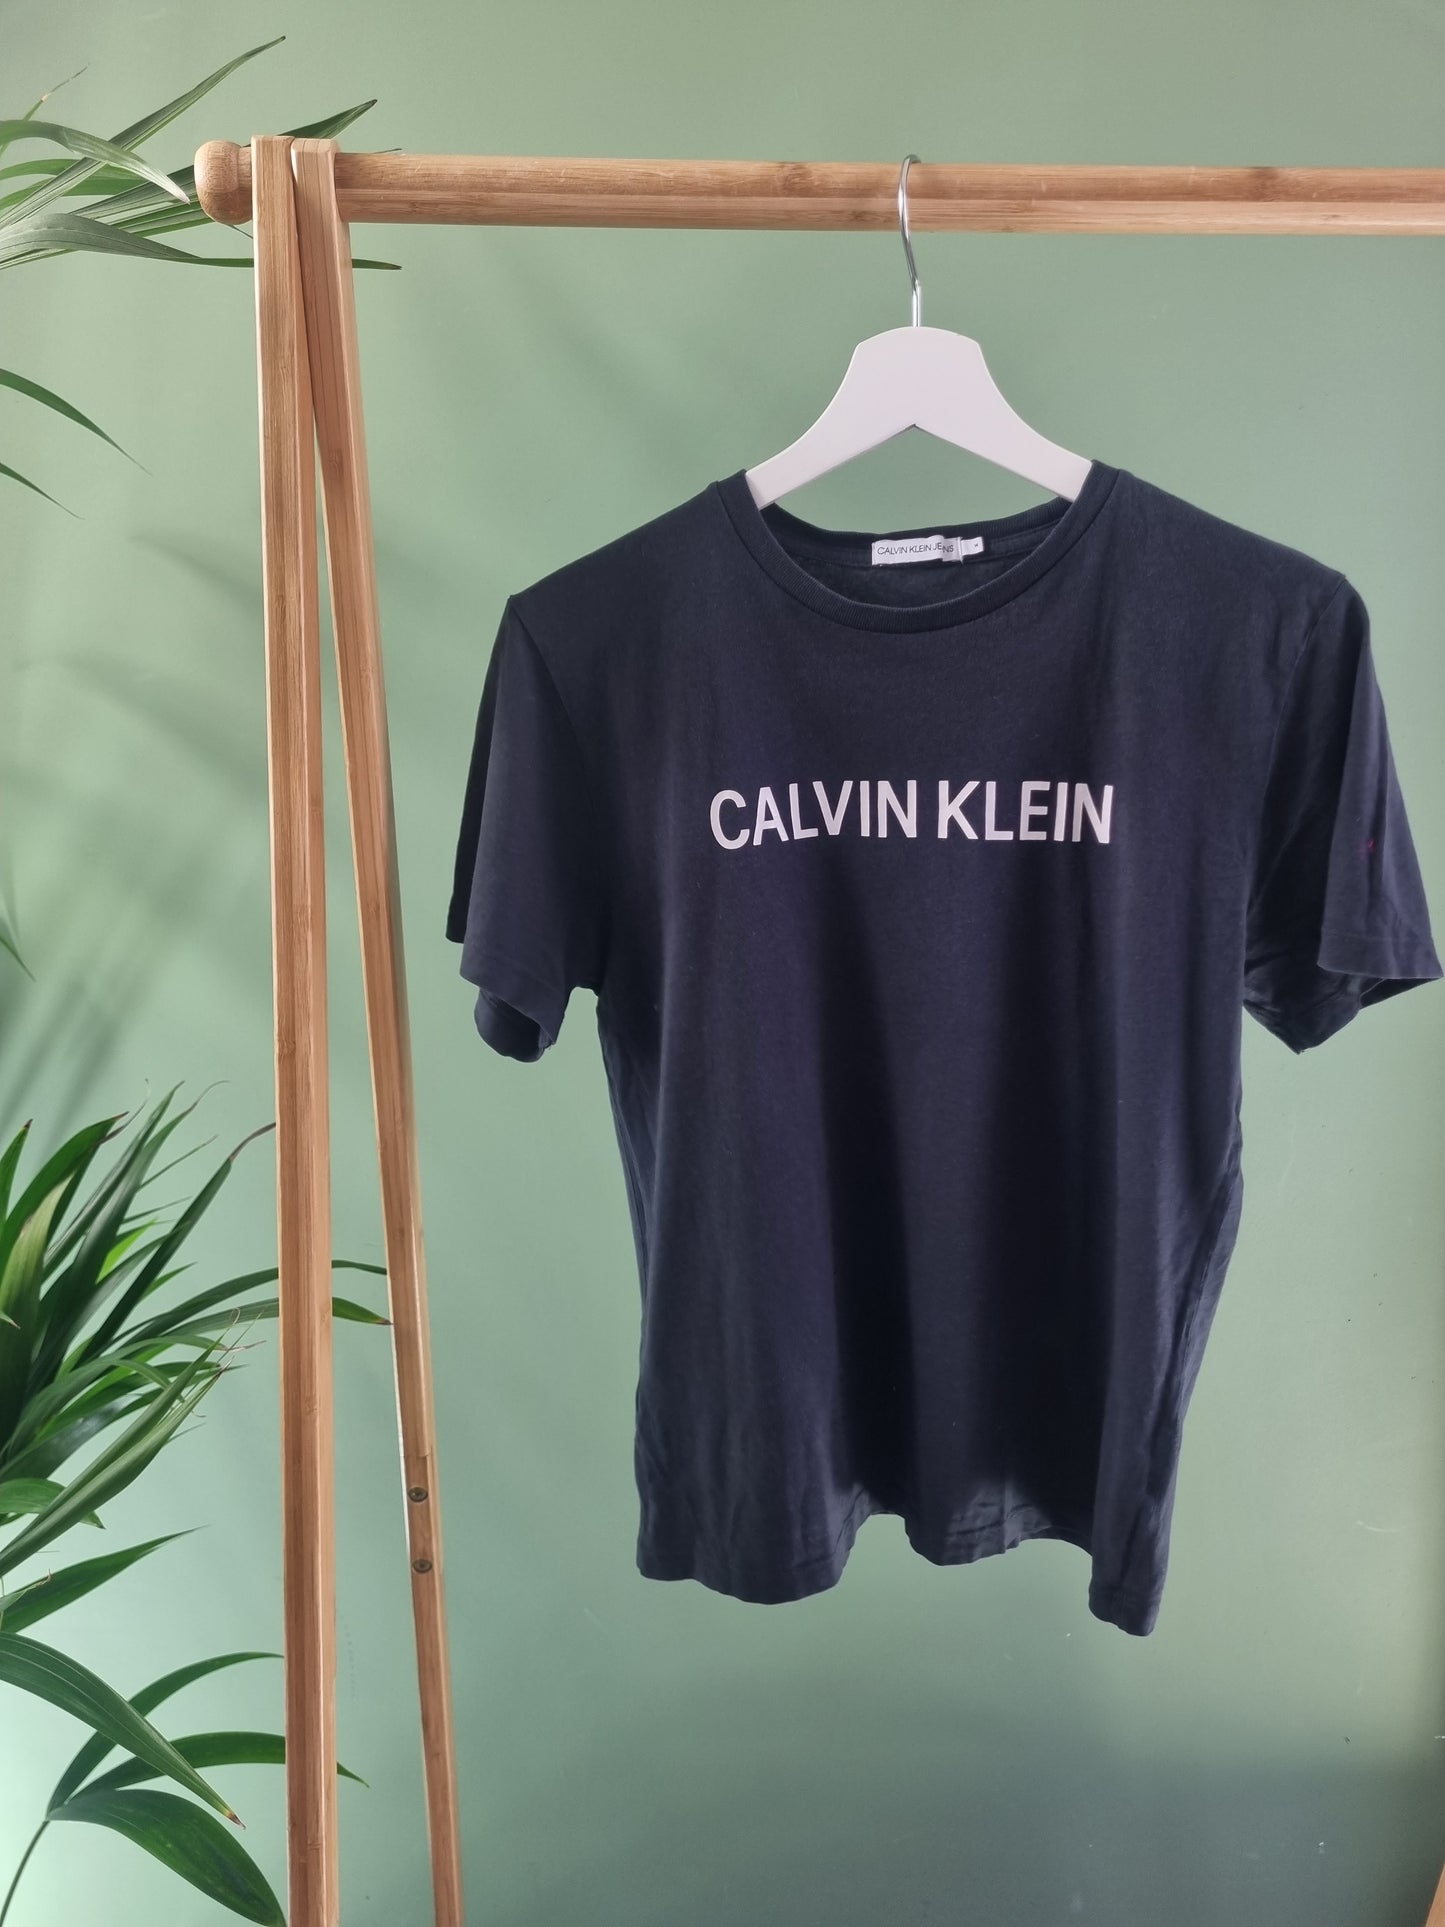 Calvin Klein tee maat S